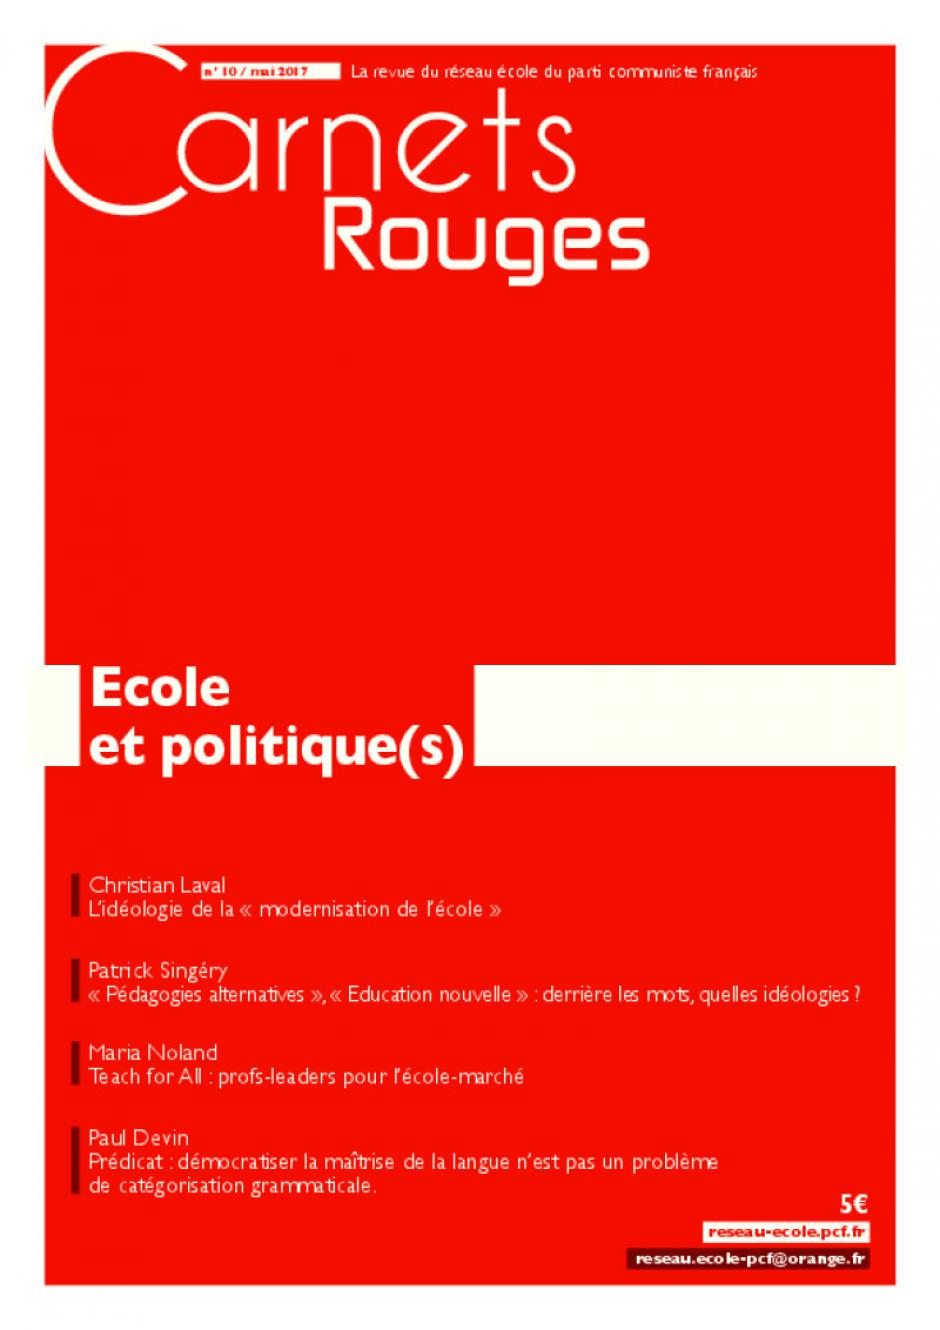 Carnets rouges n°10, revue du réseau école : Ecole et politique